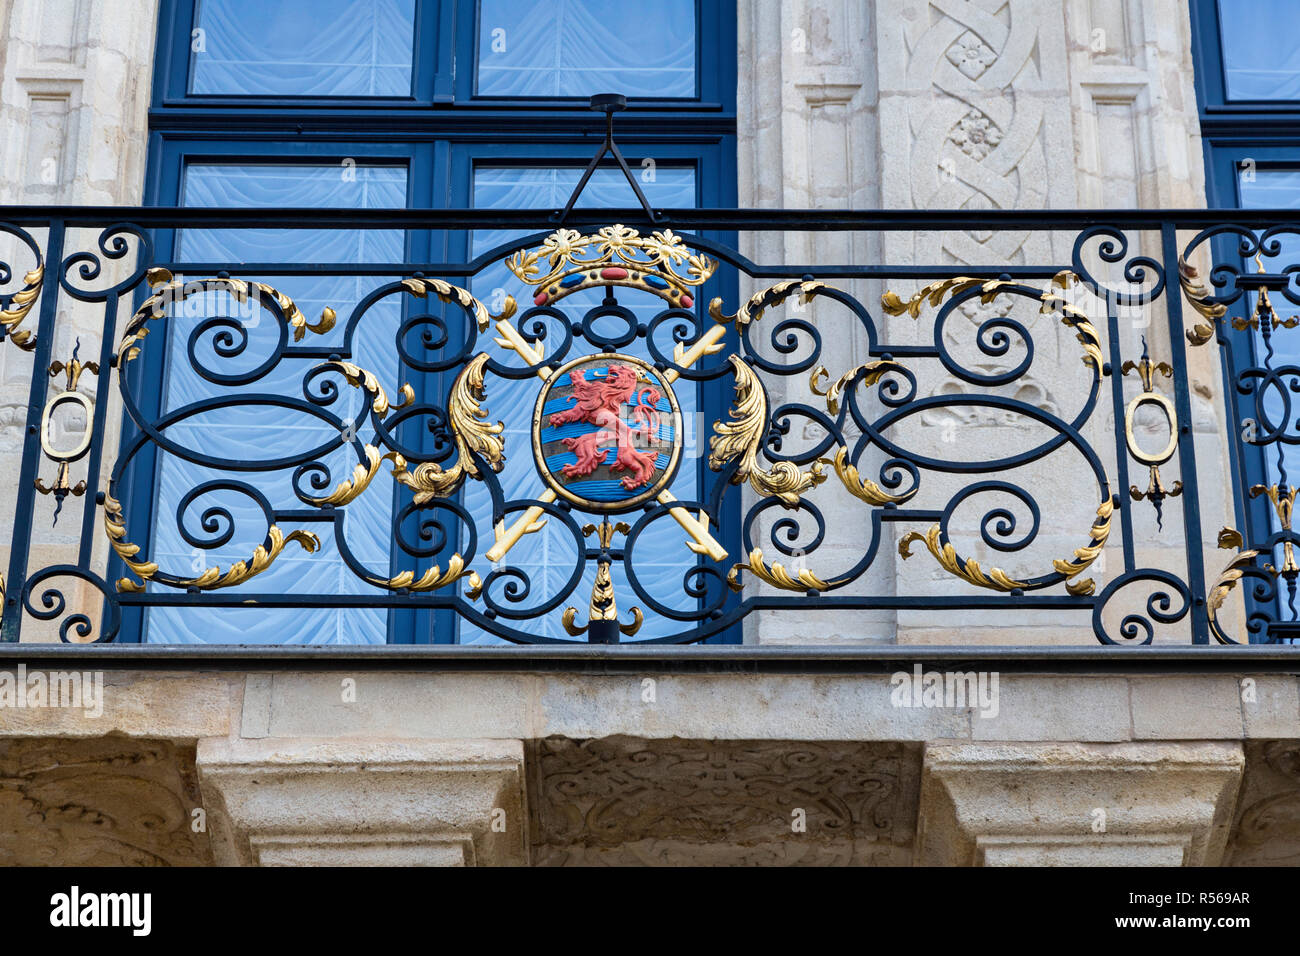 Die Stadt Luxemburg, Luxemburg. Wappen auf Balkon Geländer aus der offiziellen Residenz des Großherzogs von Luxemburg. Stockfoto